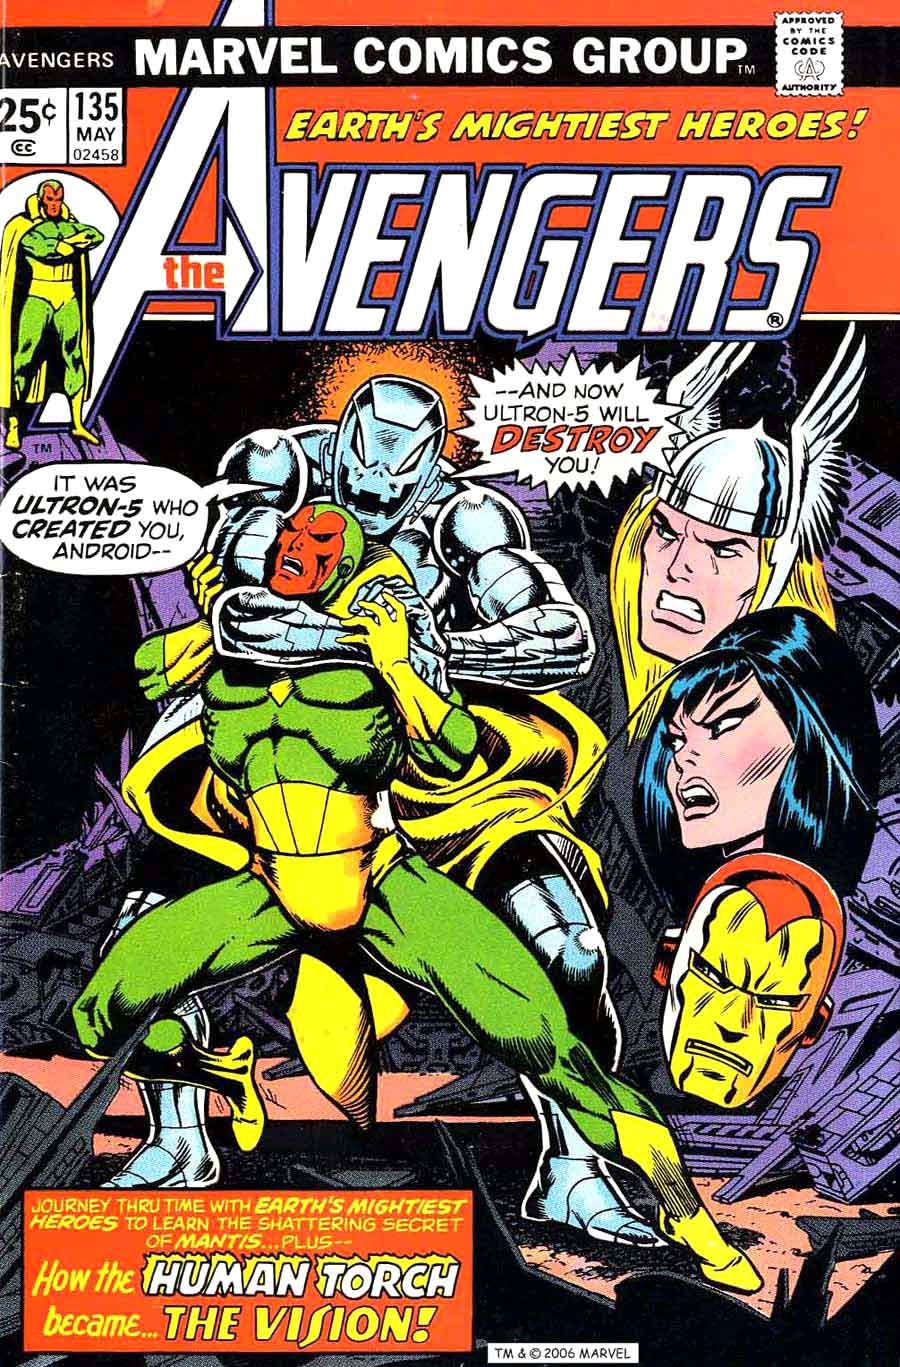 Avengers v1 #135 marvel comic book cover art by Jim Starlin